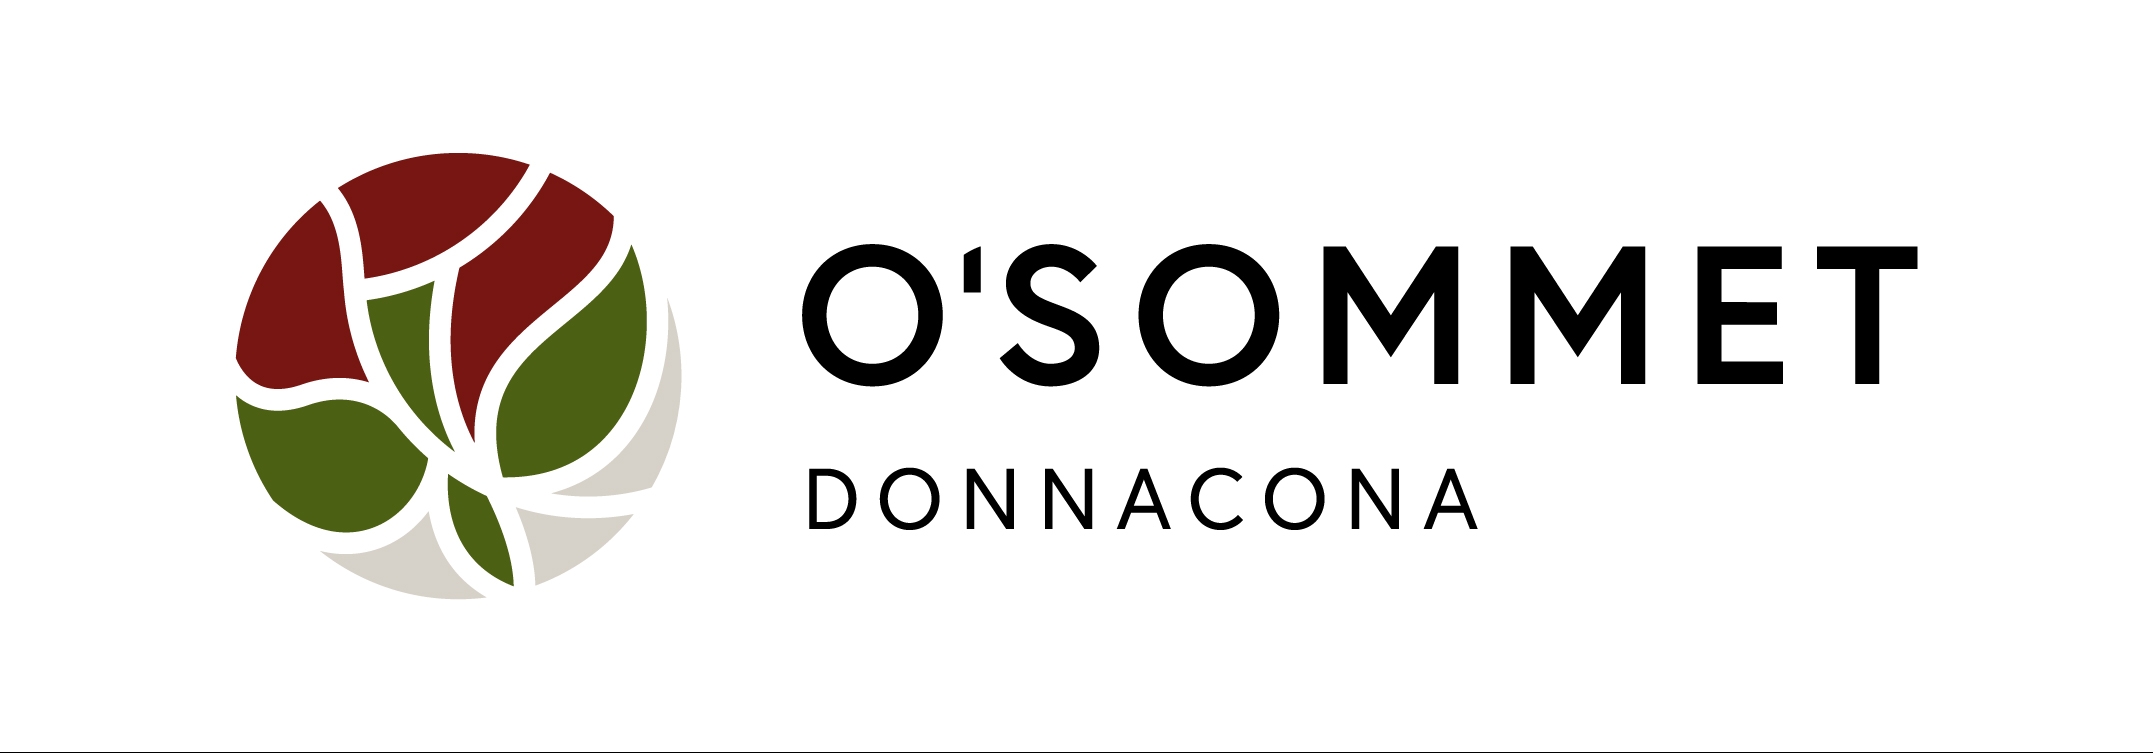 O'Sommet Donnacona